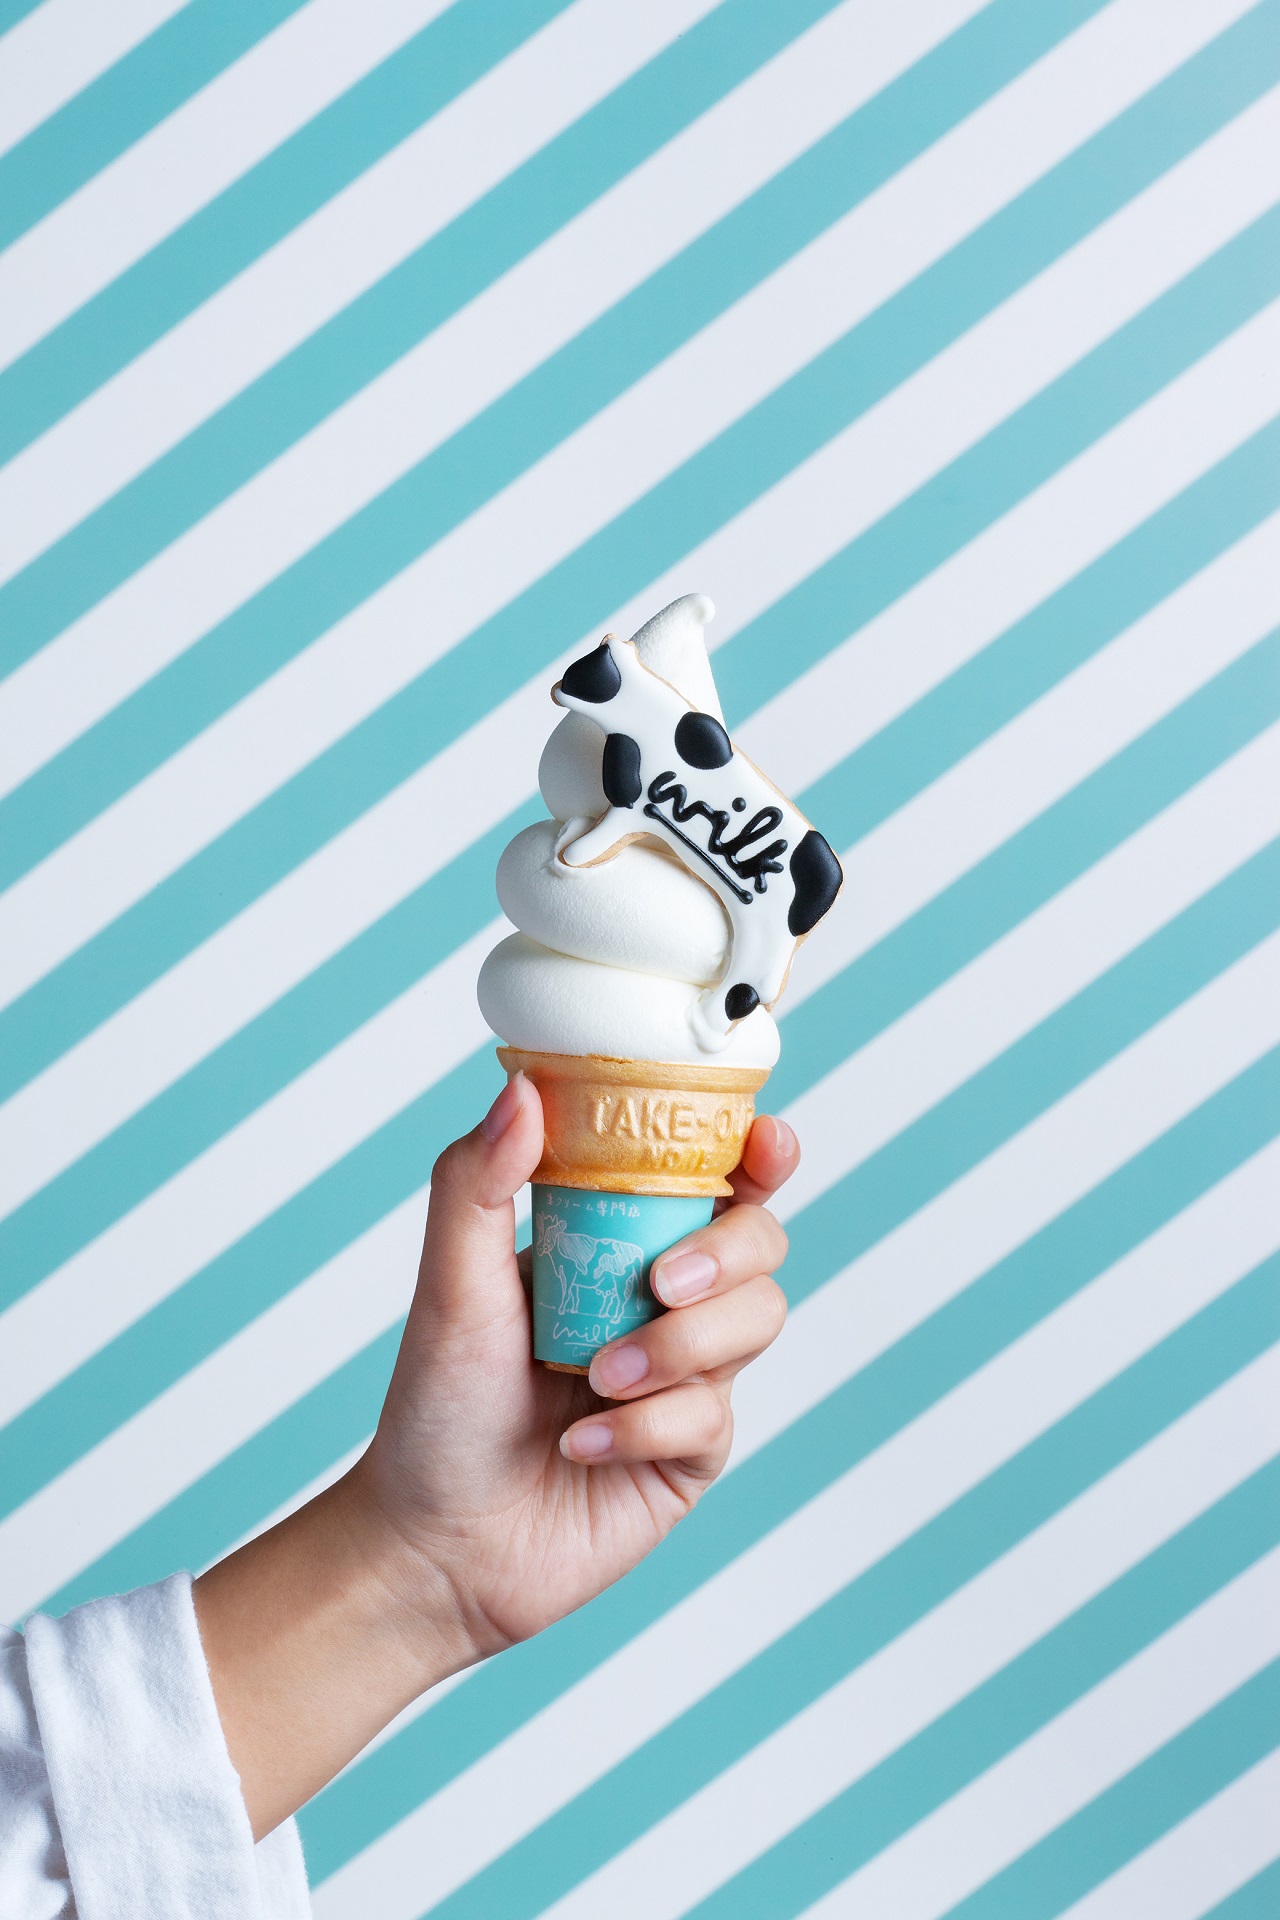 ふわふわなめらかな 生クリーム専門店ミルク が名古屋パルコにオープン Tabizine 人生に旅心を